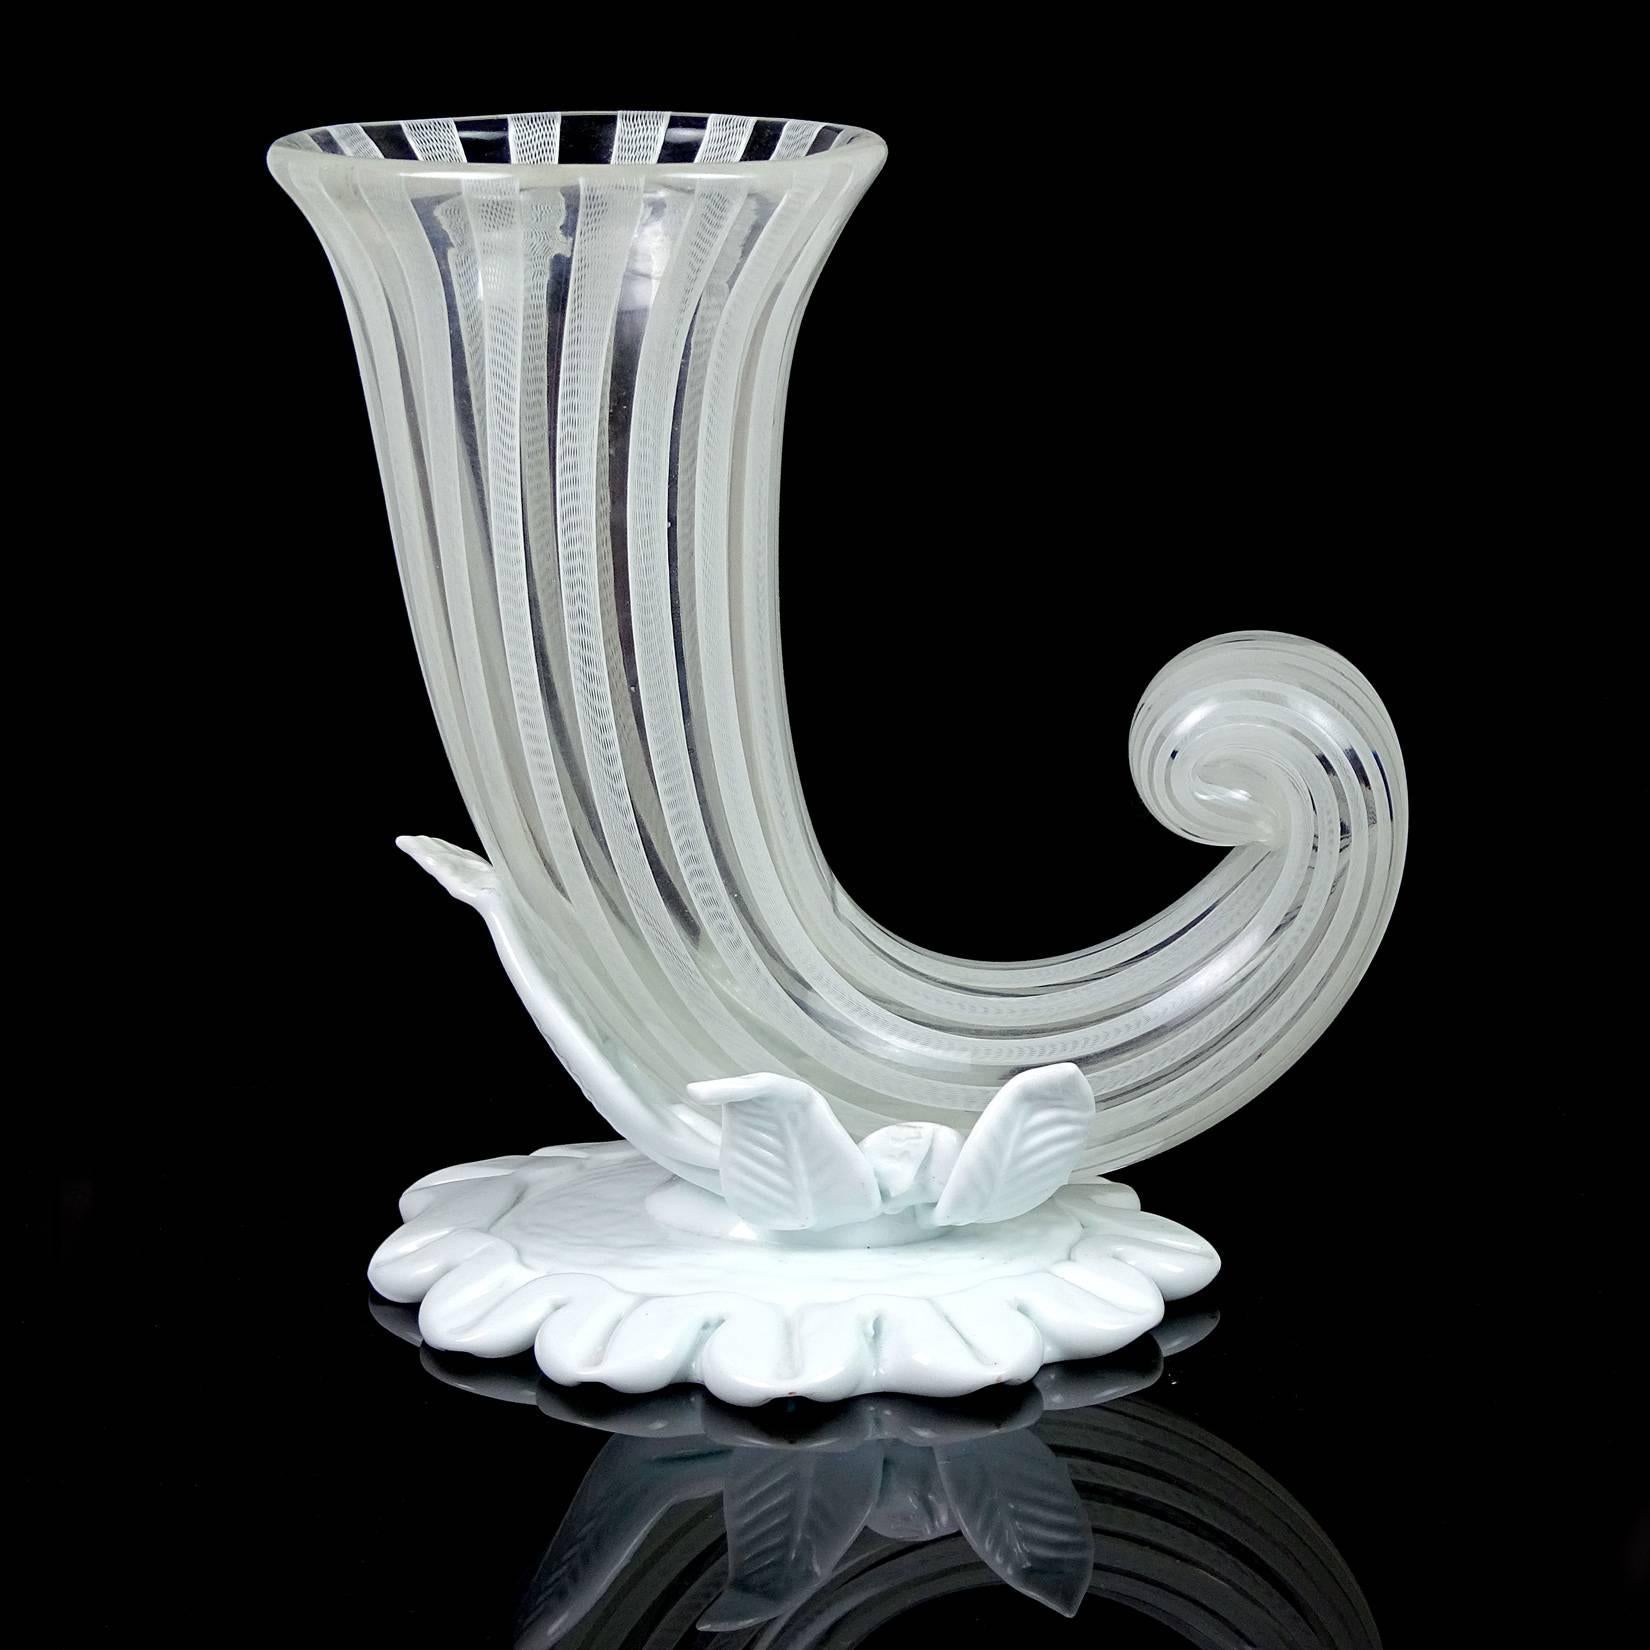 Magnifique et rare vase à cornes d'abondance en verre soufflé à la main de Murano, blanc avec des rubans. Design/One documenté à Fulvio Bianconi pour la société Venini, vers 1948, mais la signature indique une production plus tardive des années